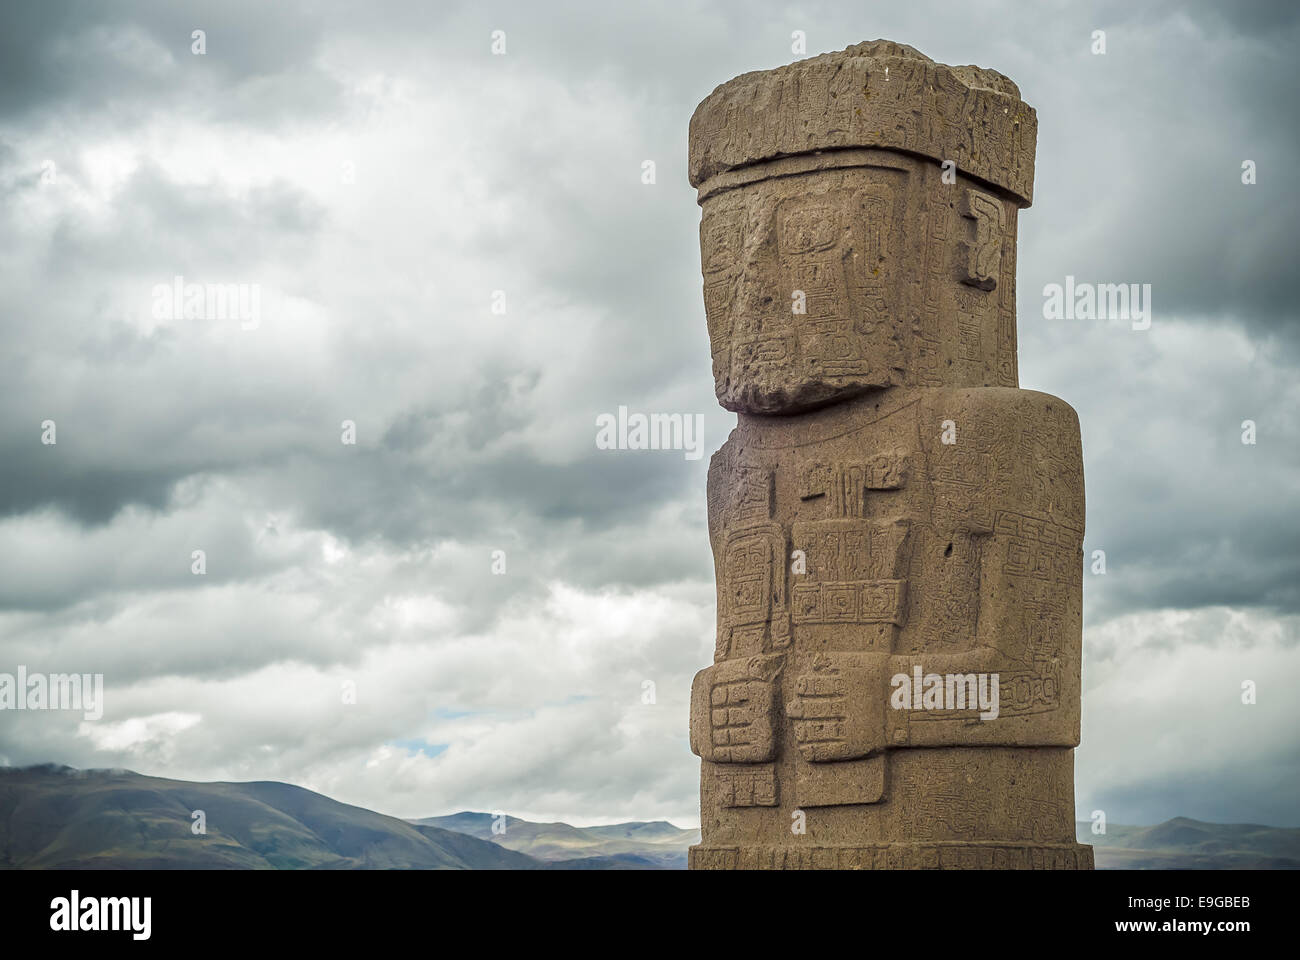 Monolith at Ruins of Tiwanaku, Bolivia Stock Photo